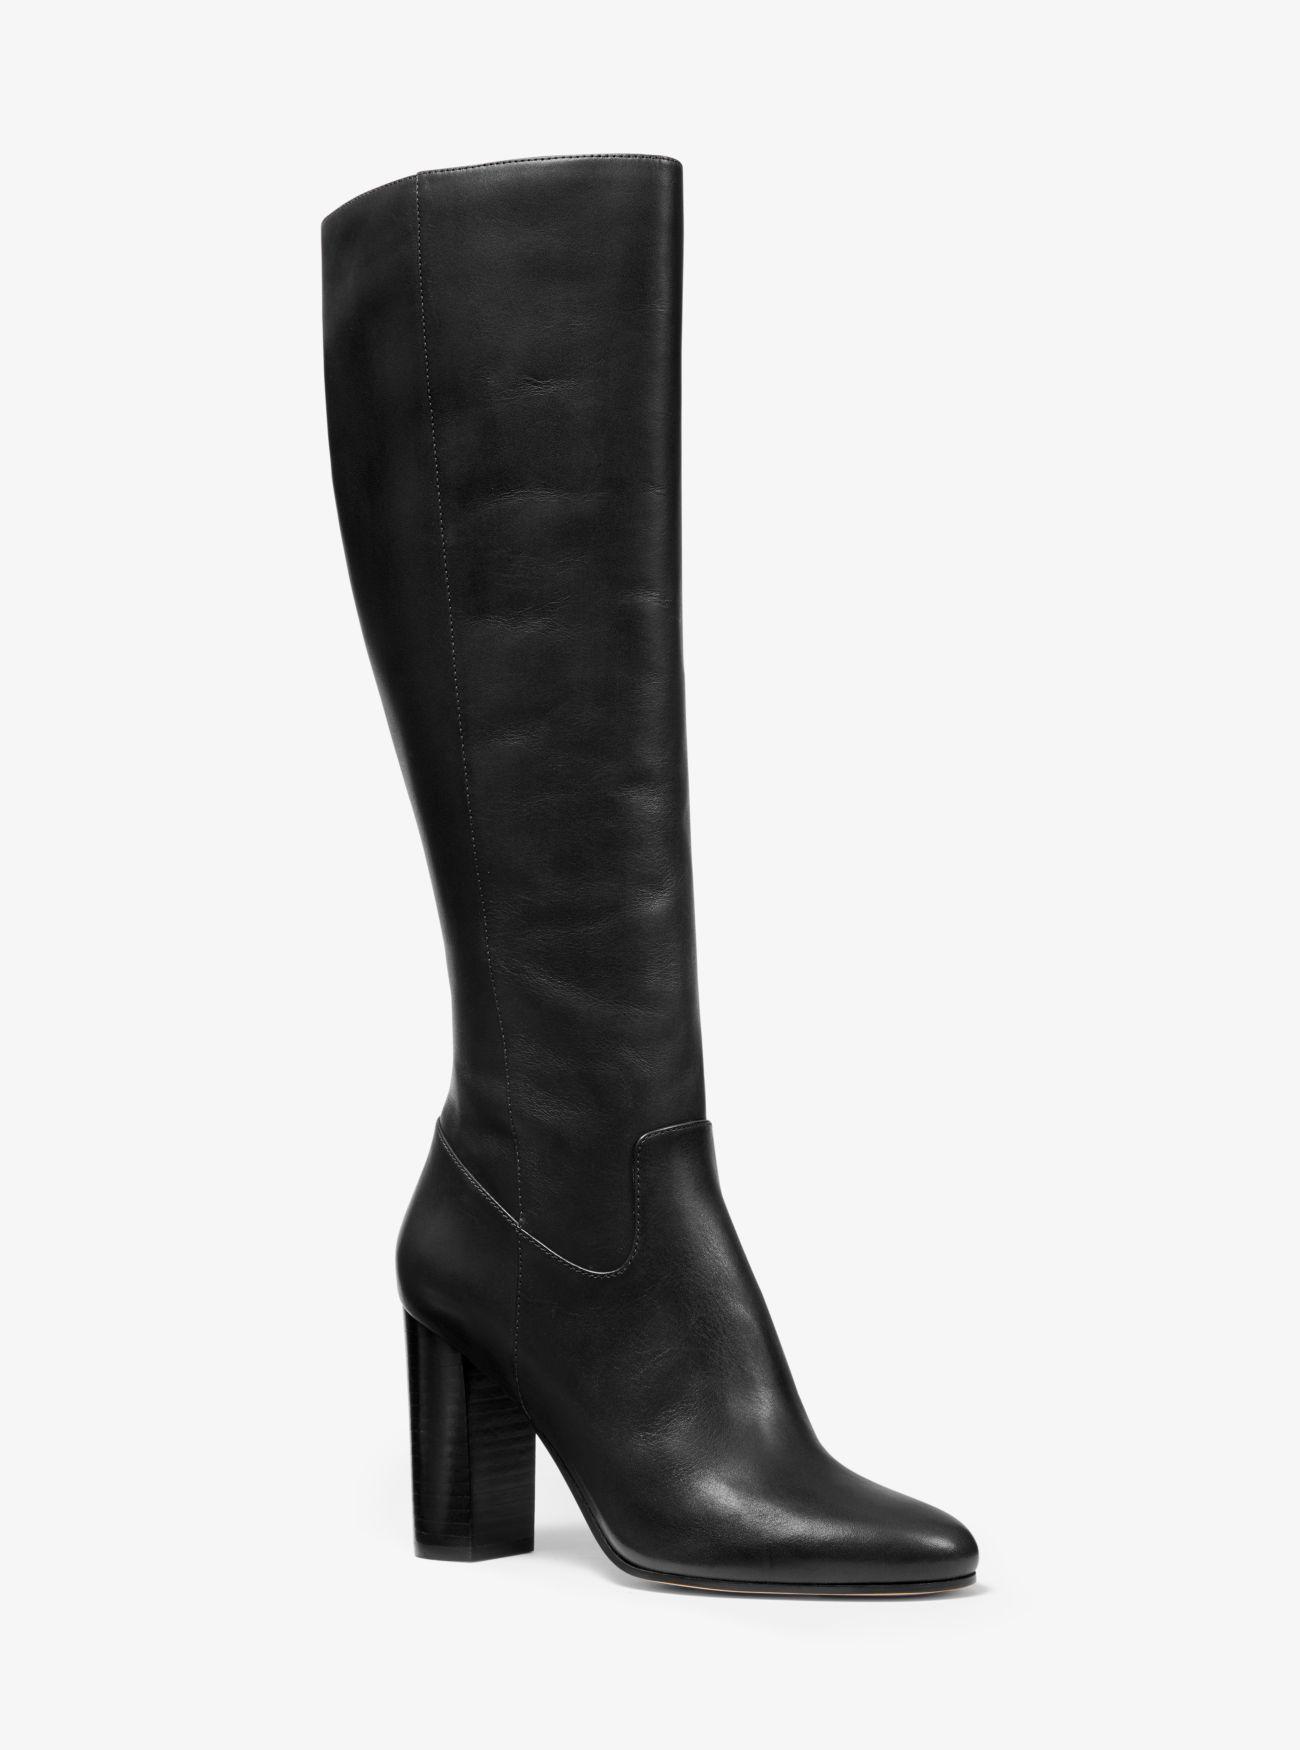 Michael Kors Lottie Leather Boot in Black - Lyst